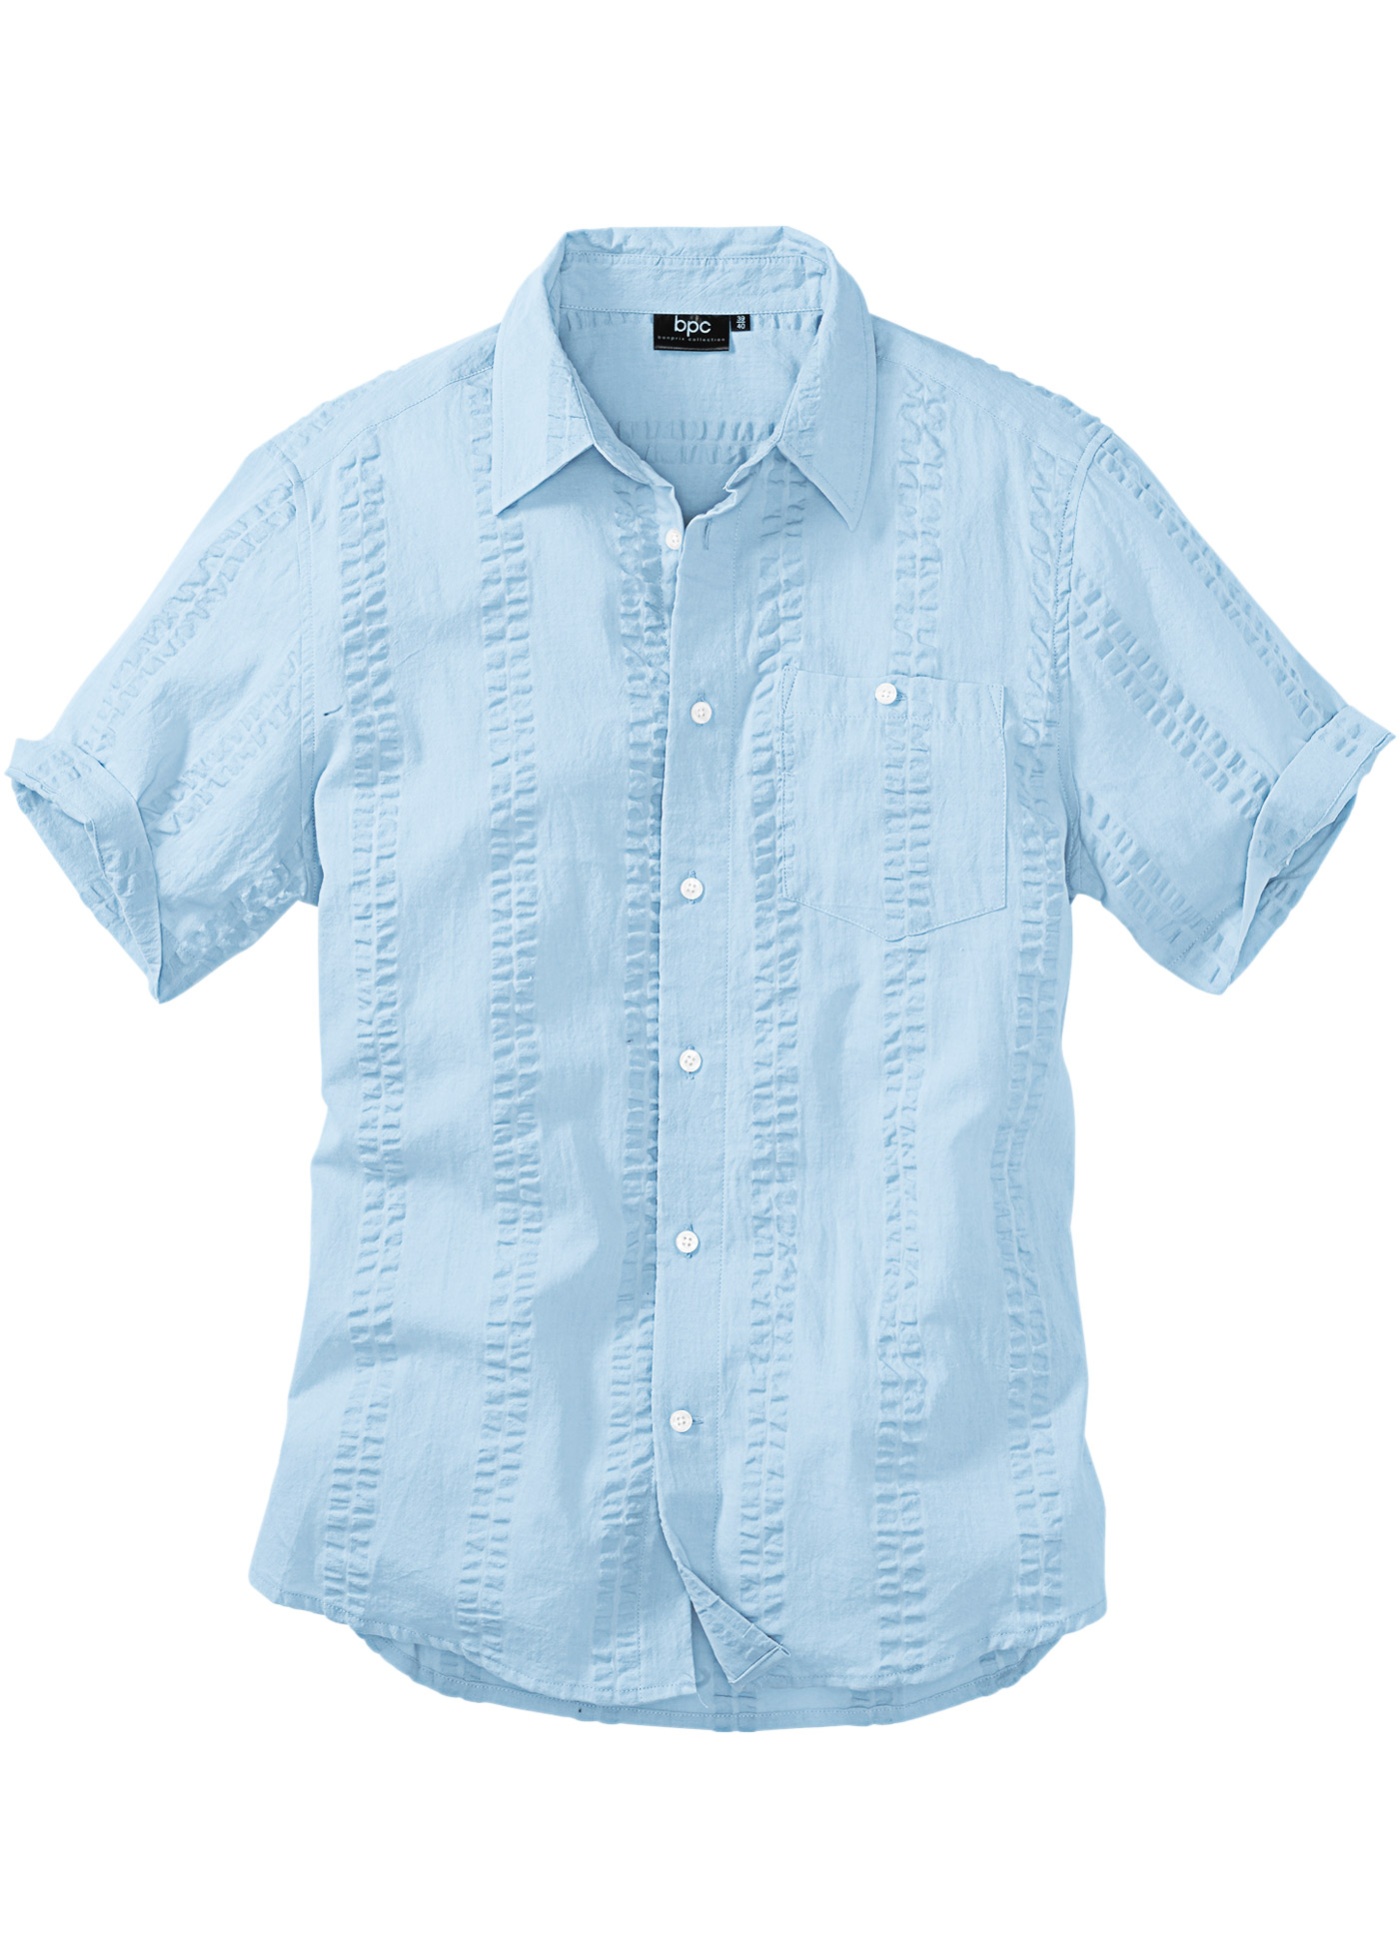 Рубашка летняя мужская с коротким рукавом купить. Bonprix рубашка Regular Fit. Рубашка bonprix мужская. Рубашки из ткани Seersucker. Голубая рубашка с коротким рукавом.